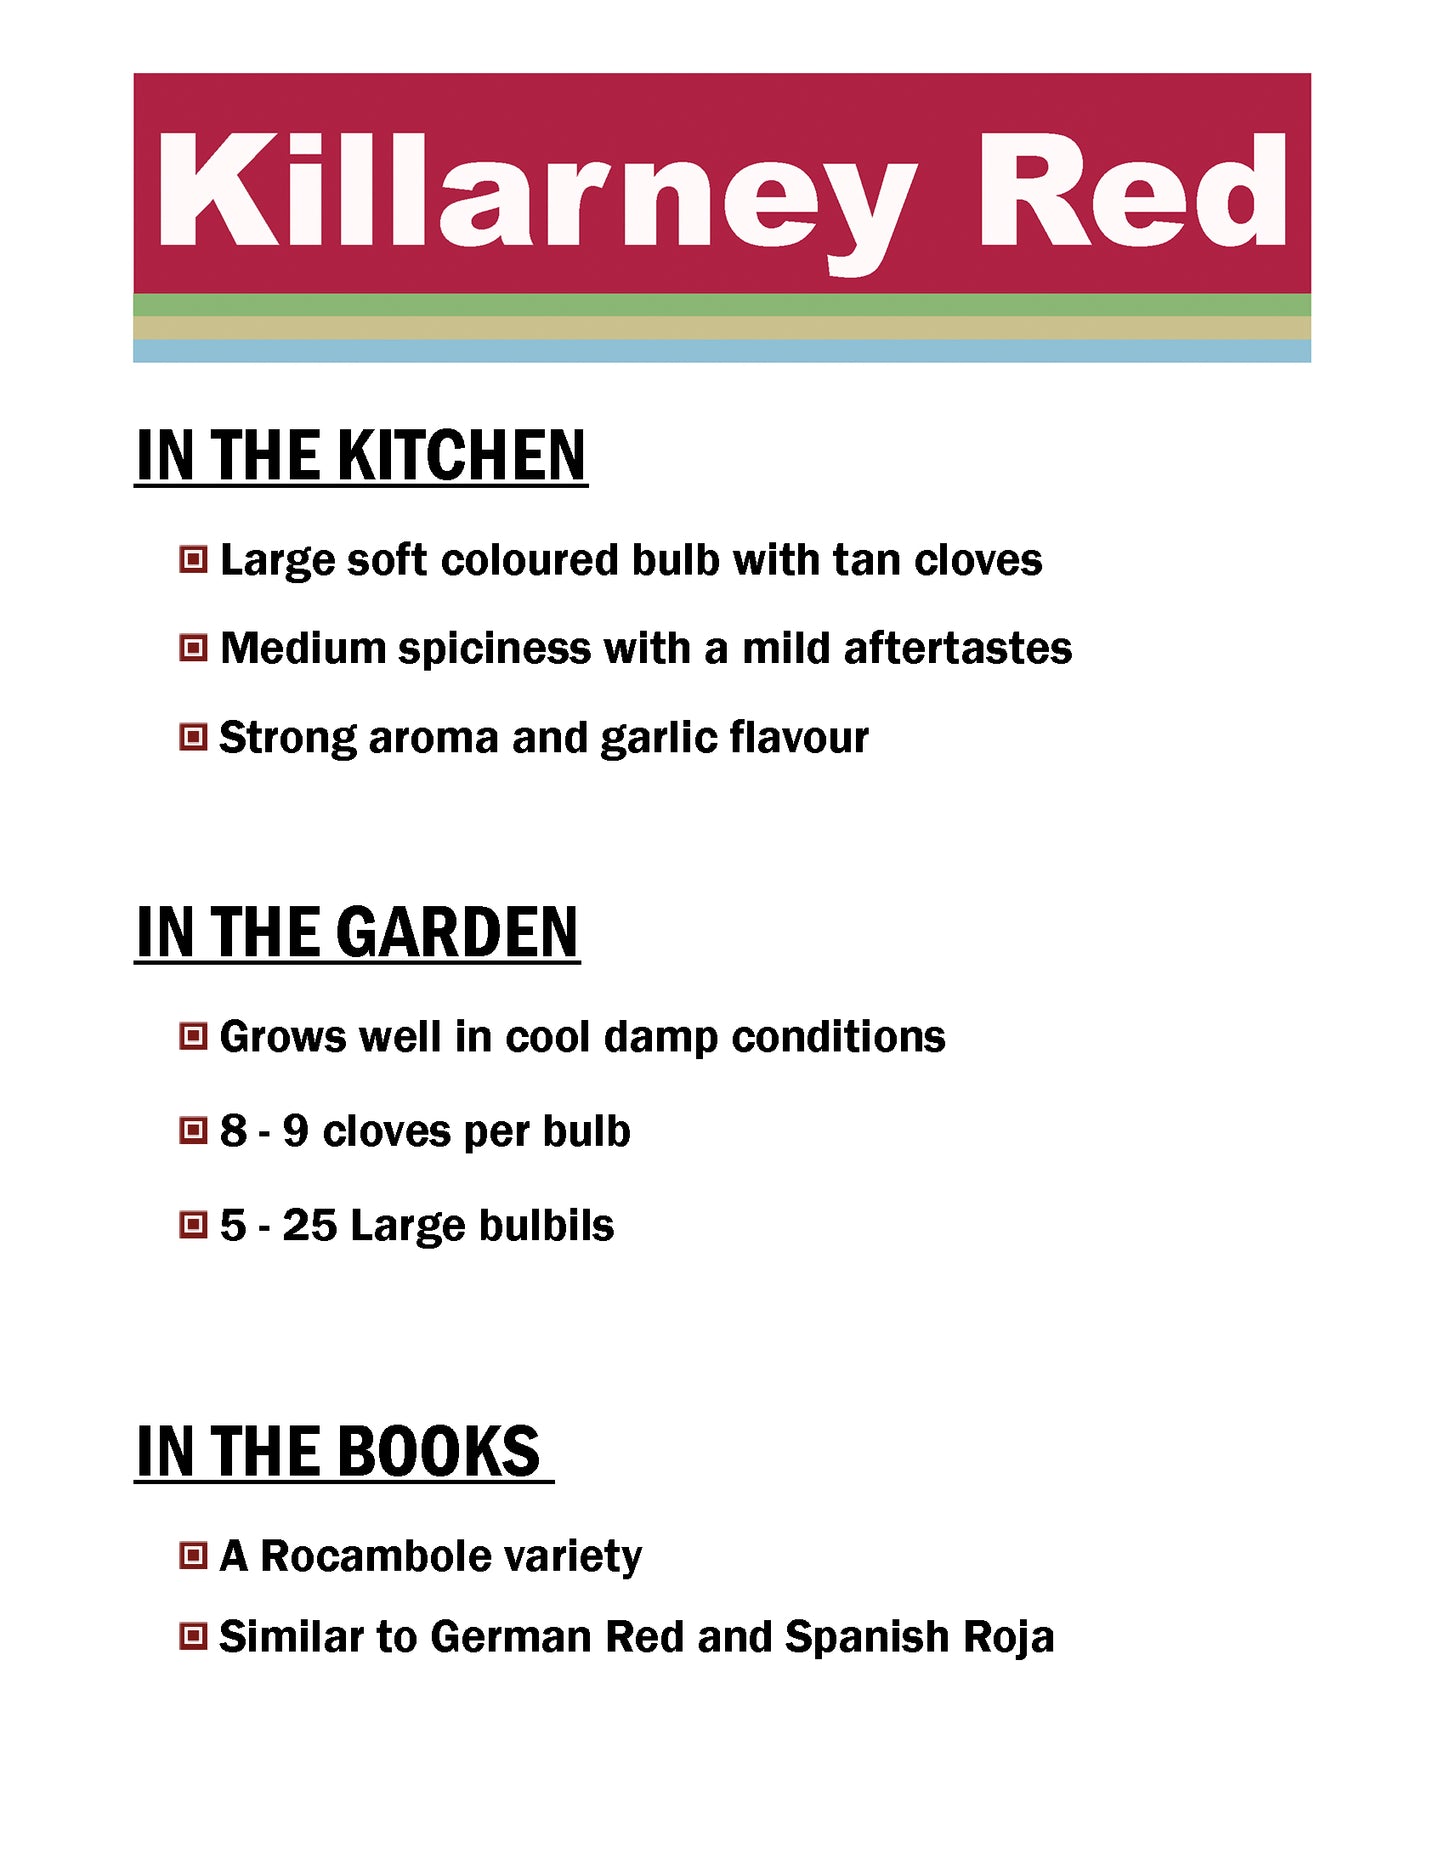 Killarney Red, Rocambole garlic description card by Garlicloves